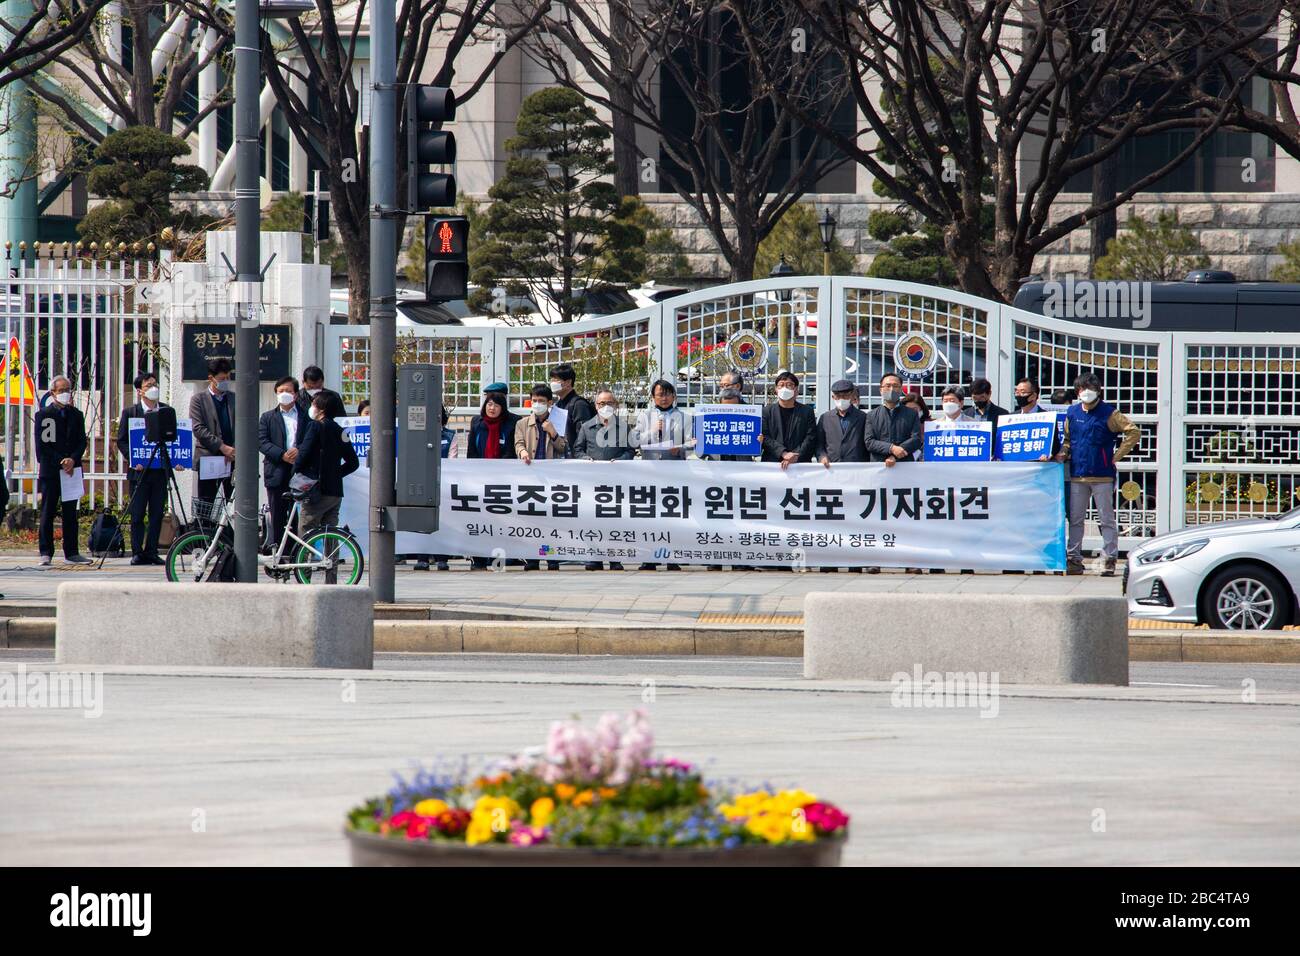 Manifestation de l'Union portant des masques pendant la pandémie de Coronavirus, Séoul, Corée du Sud Banque D'Images